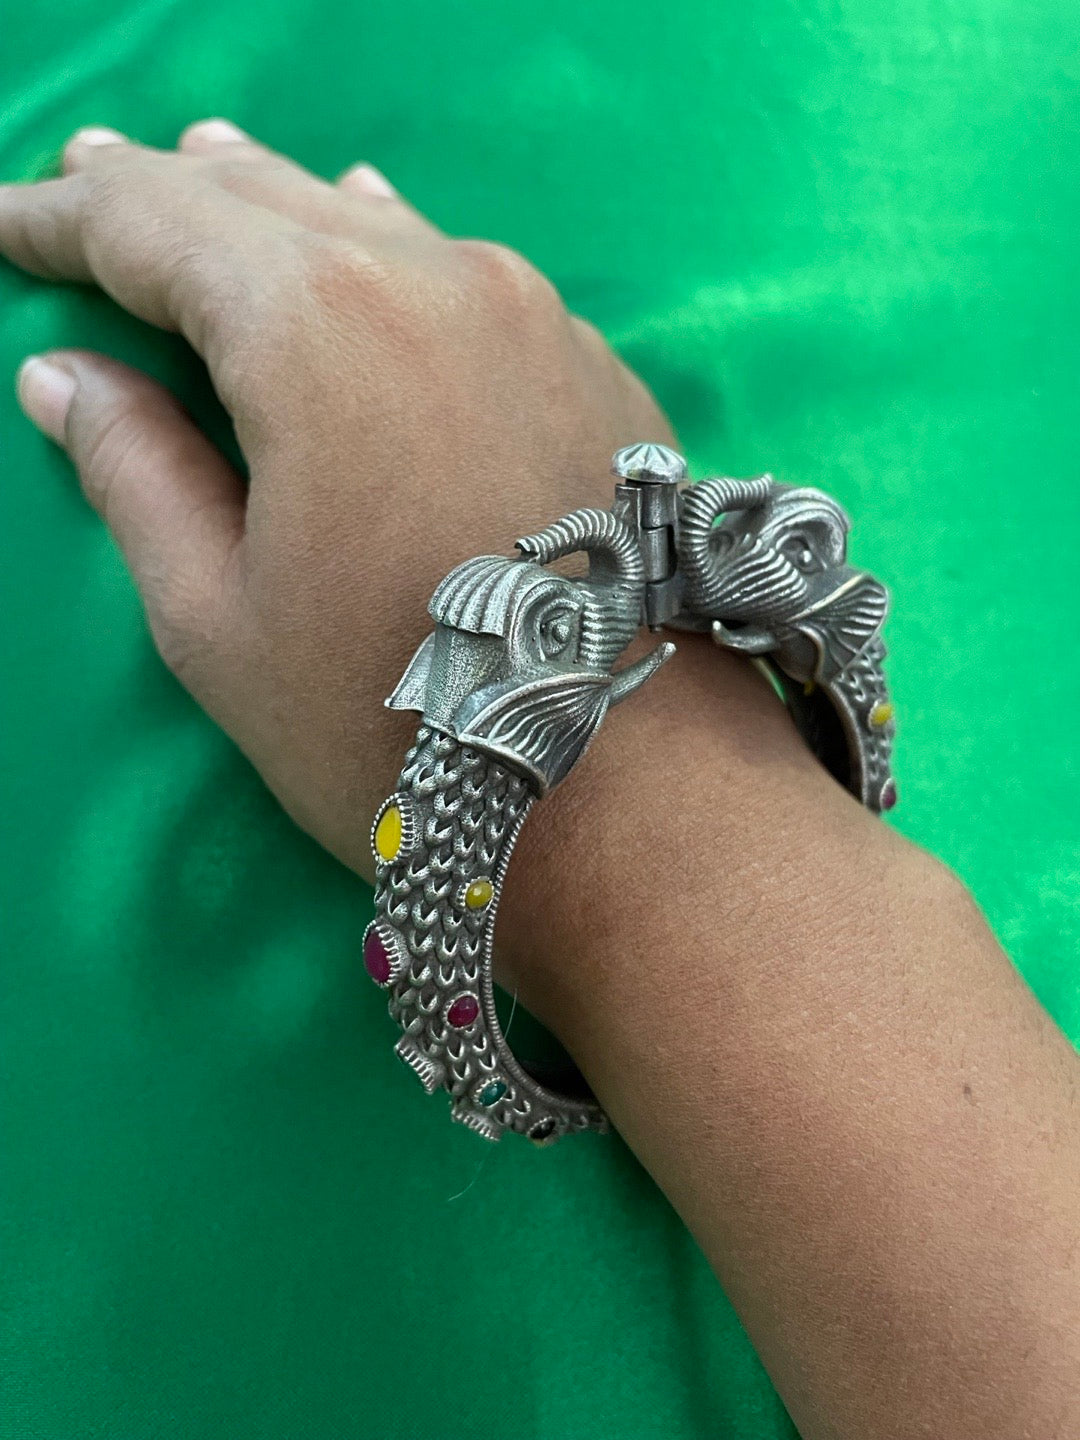 bracelet heart crystal glass stone stretch bracelet multi color | eBay